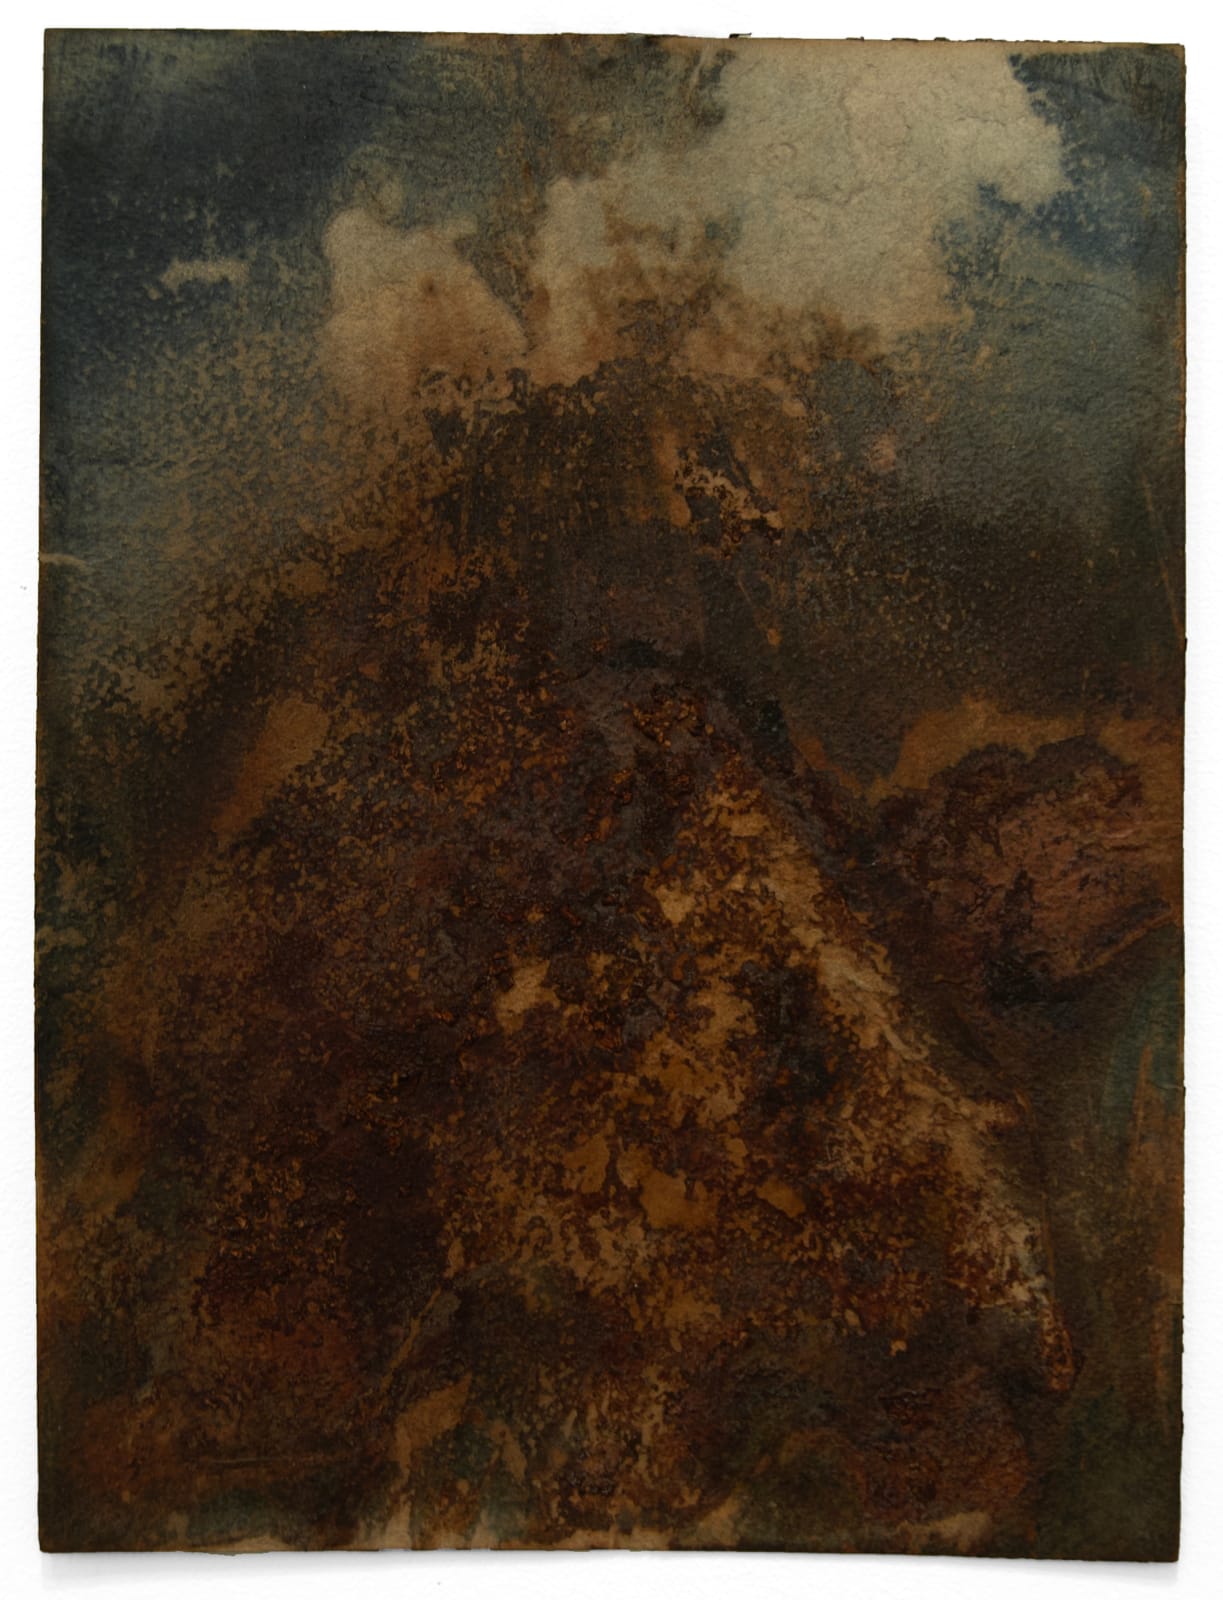 MARCIA KURE, Abstract Bodies: ¤, 2022 | Susan Inglett Gallery